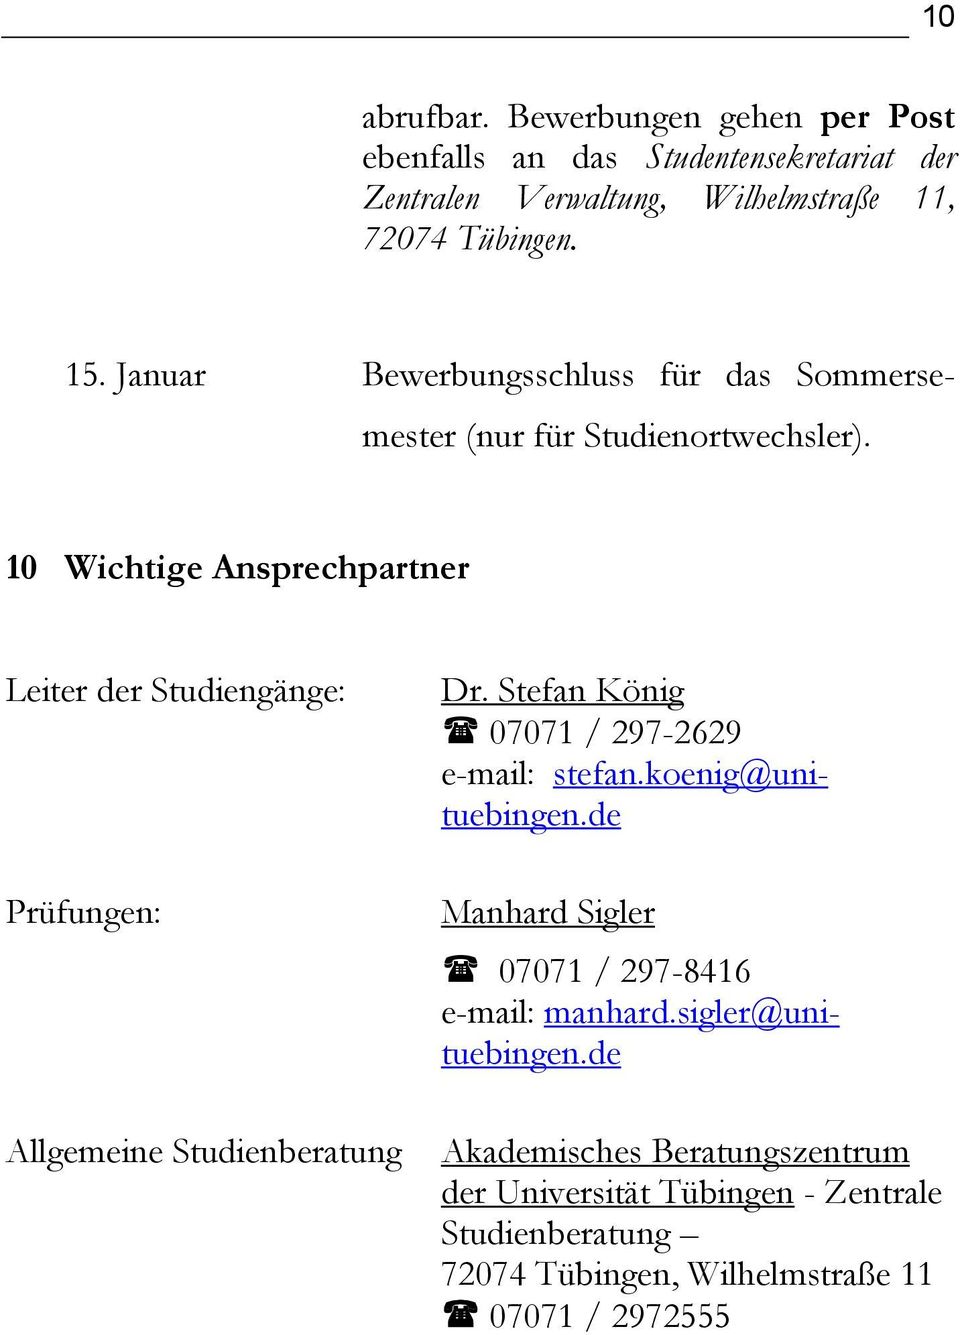 10 Wichtige Ansprechpartner Leiter der Studiengänge: Prüfungen: Allgemeine Studienberatung Dr. Stefan König 07071 / 297-2629 e-mail: stefan.